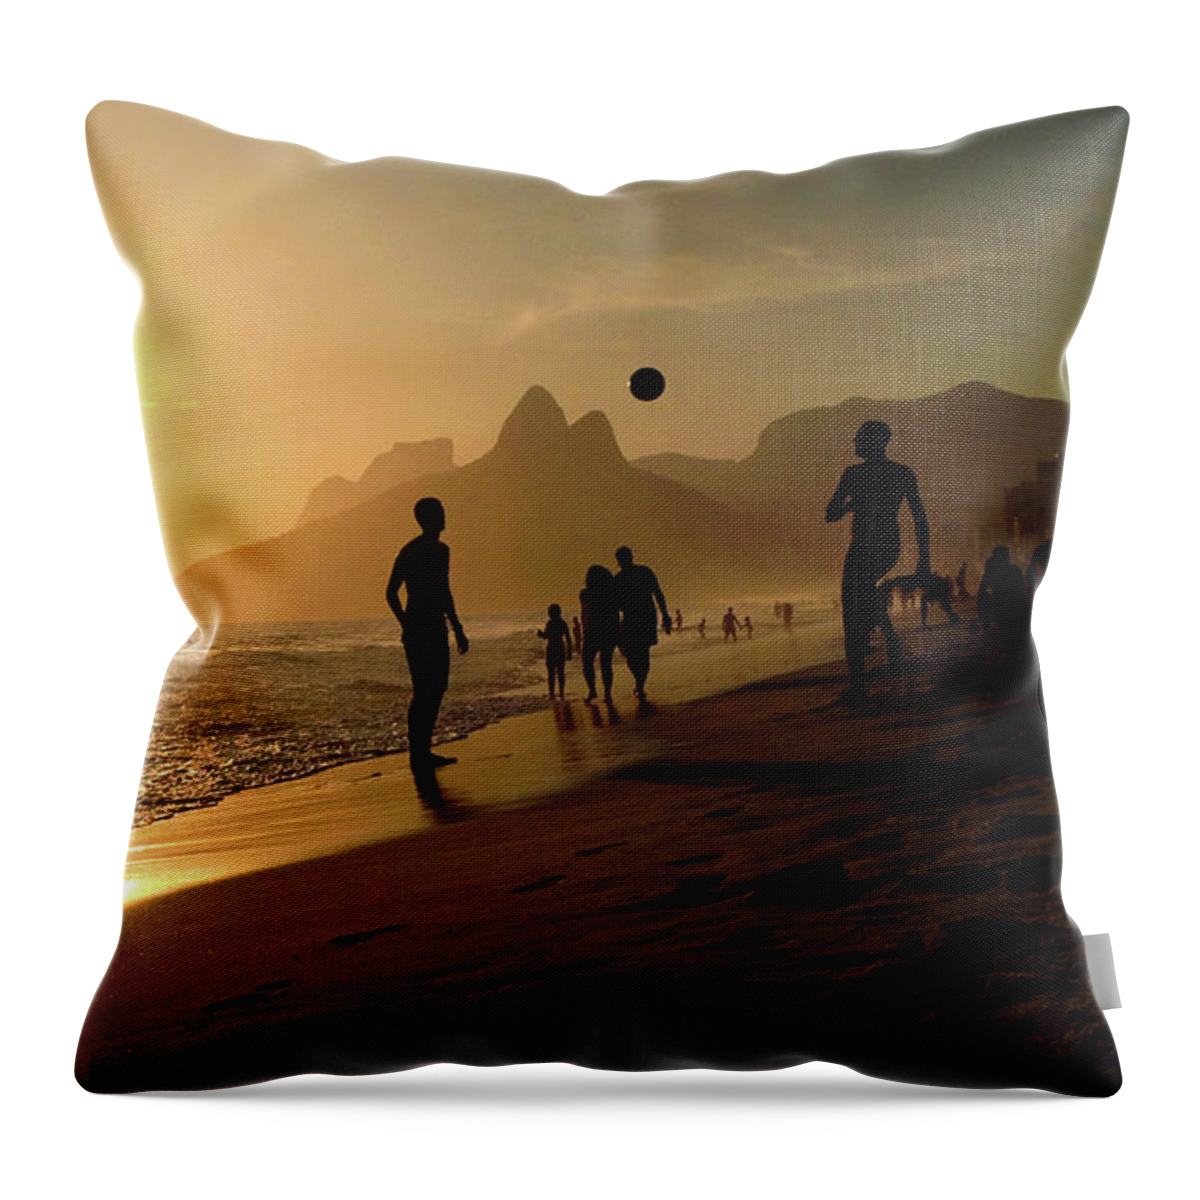 Sunset Throw Pillow featuring the photograph Rio de Janeiro #1 by Cesar Vieira